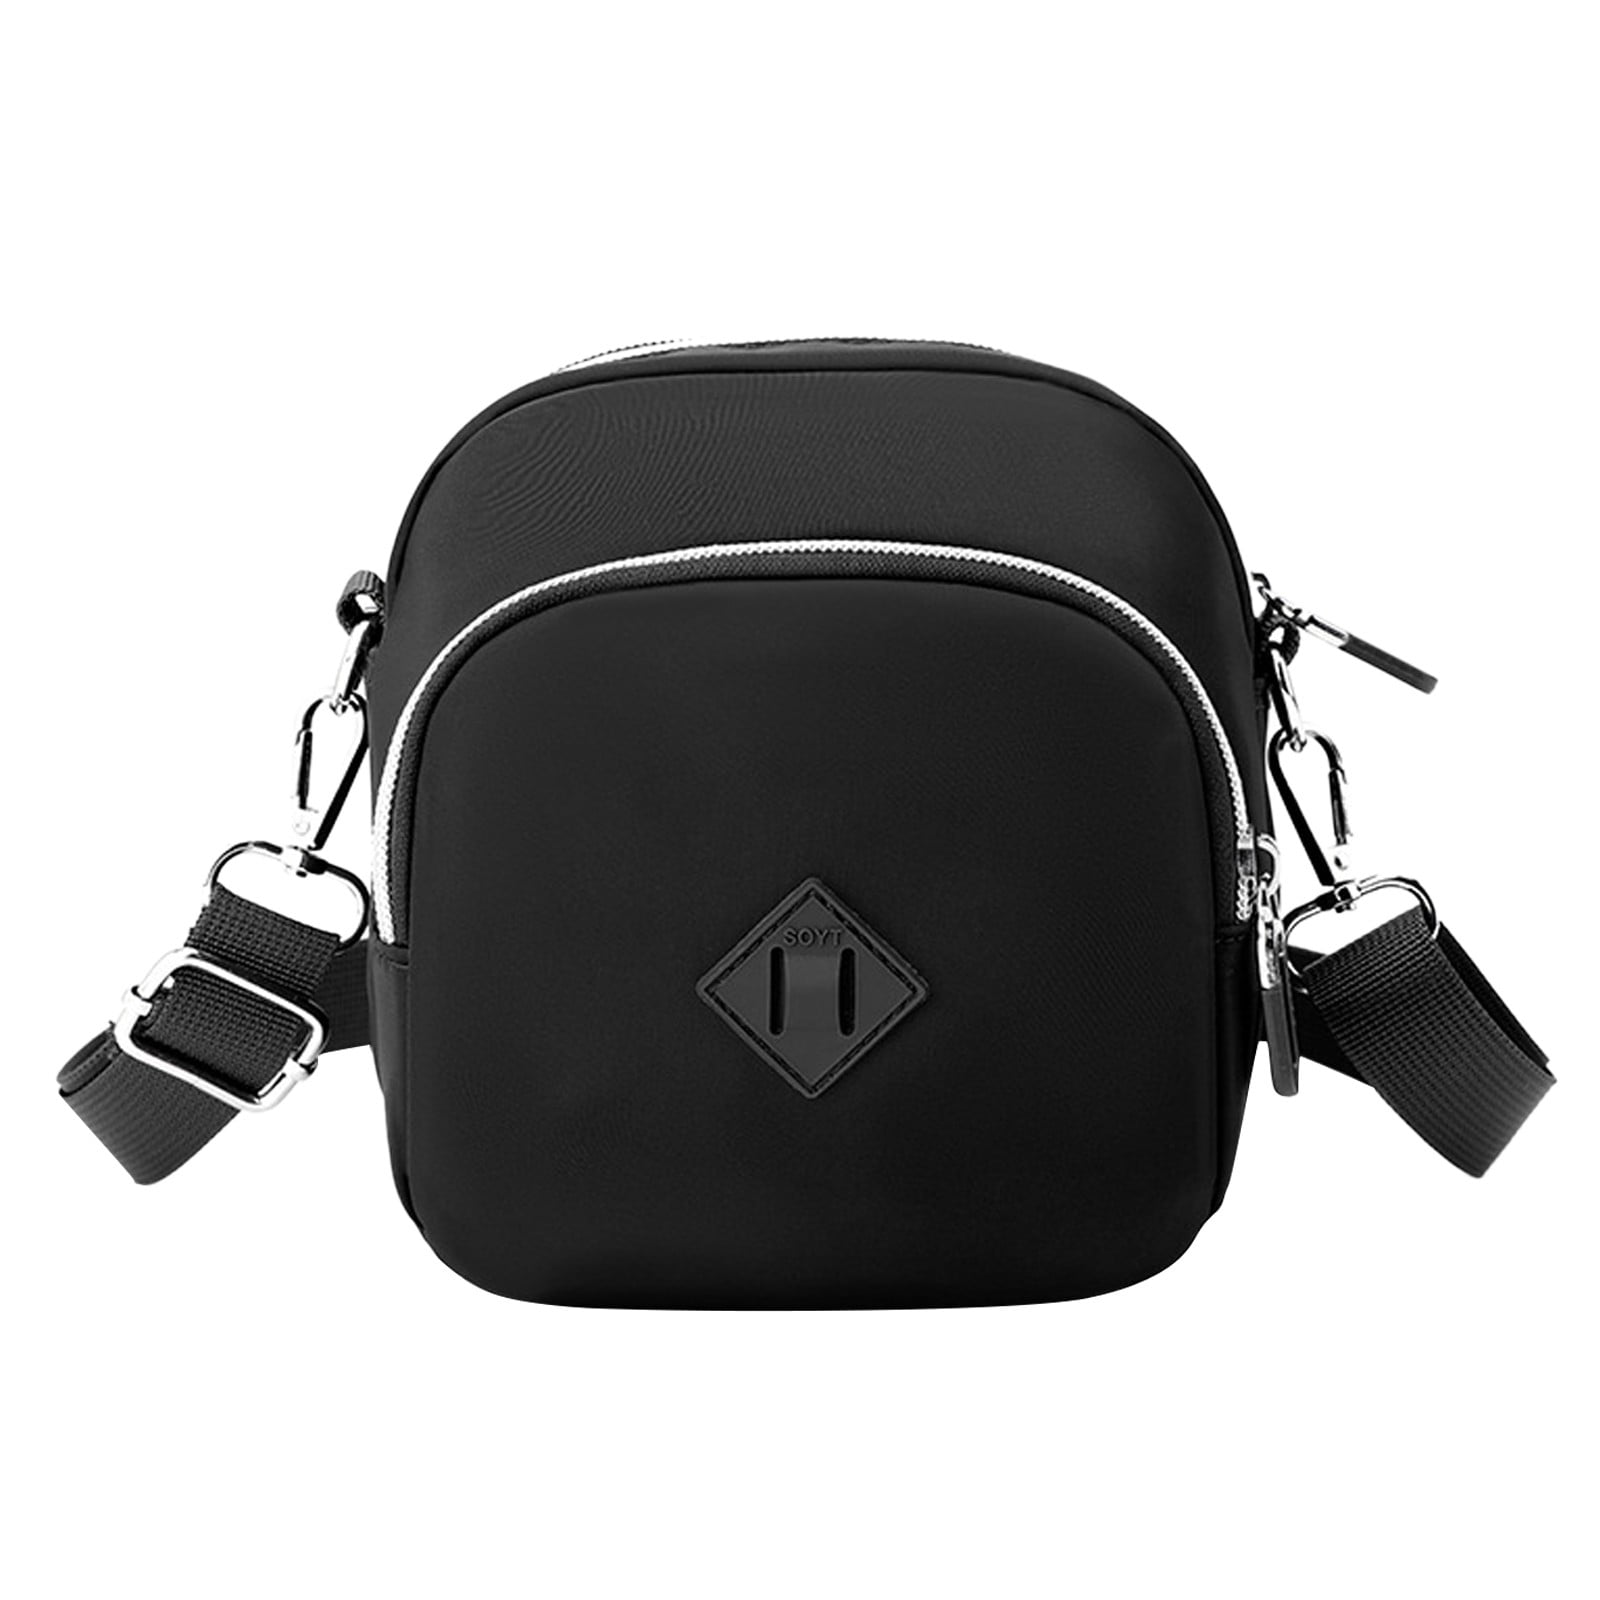 Black Soft Leather Crossbody Bags With 2 Wide Patterned Straps, Fanny Pack  Shoulder Bag, Sling Bag Women, Leather Bag Travel, Smartphone Bag 